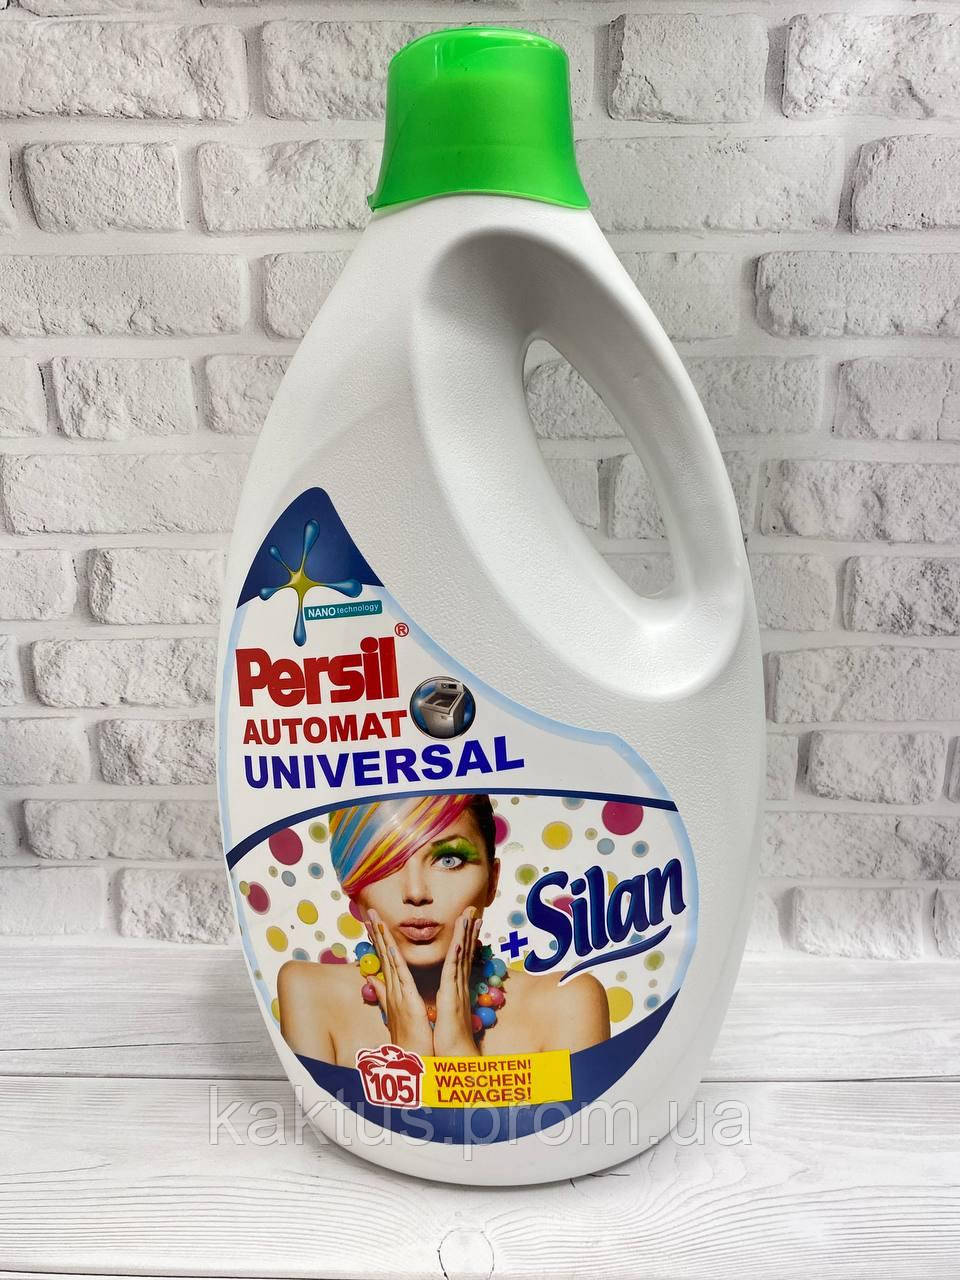 Гель для прання Persil+Silan Universal Automat, 5,775 л